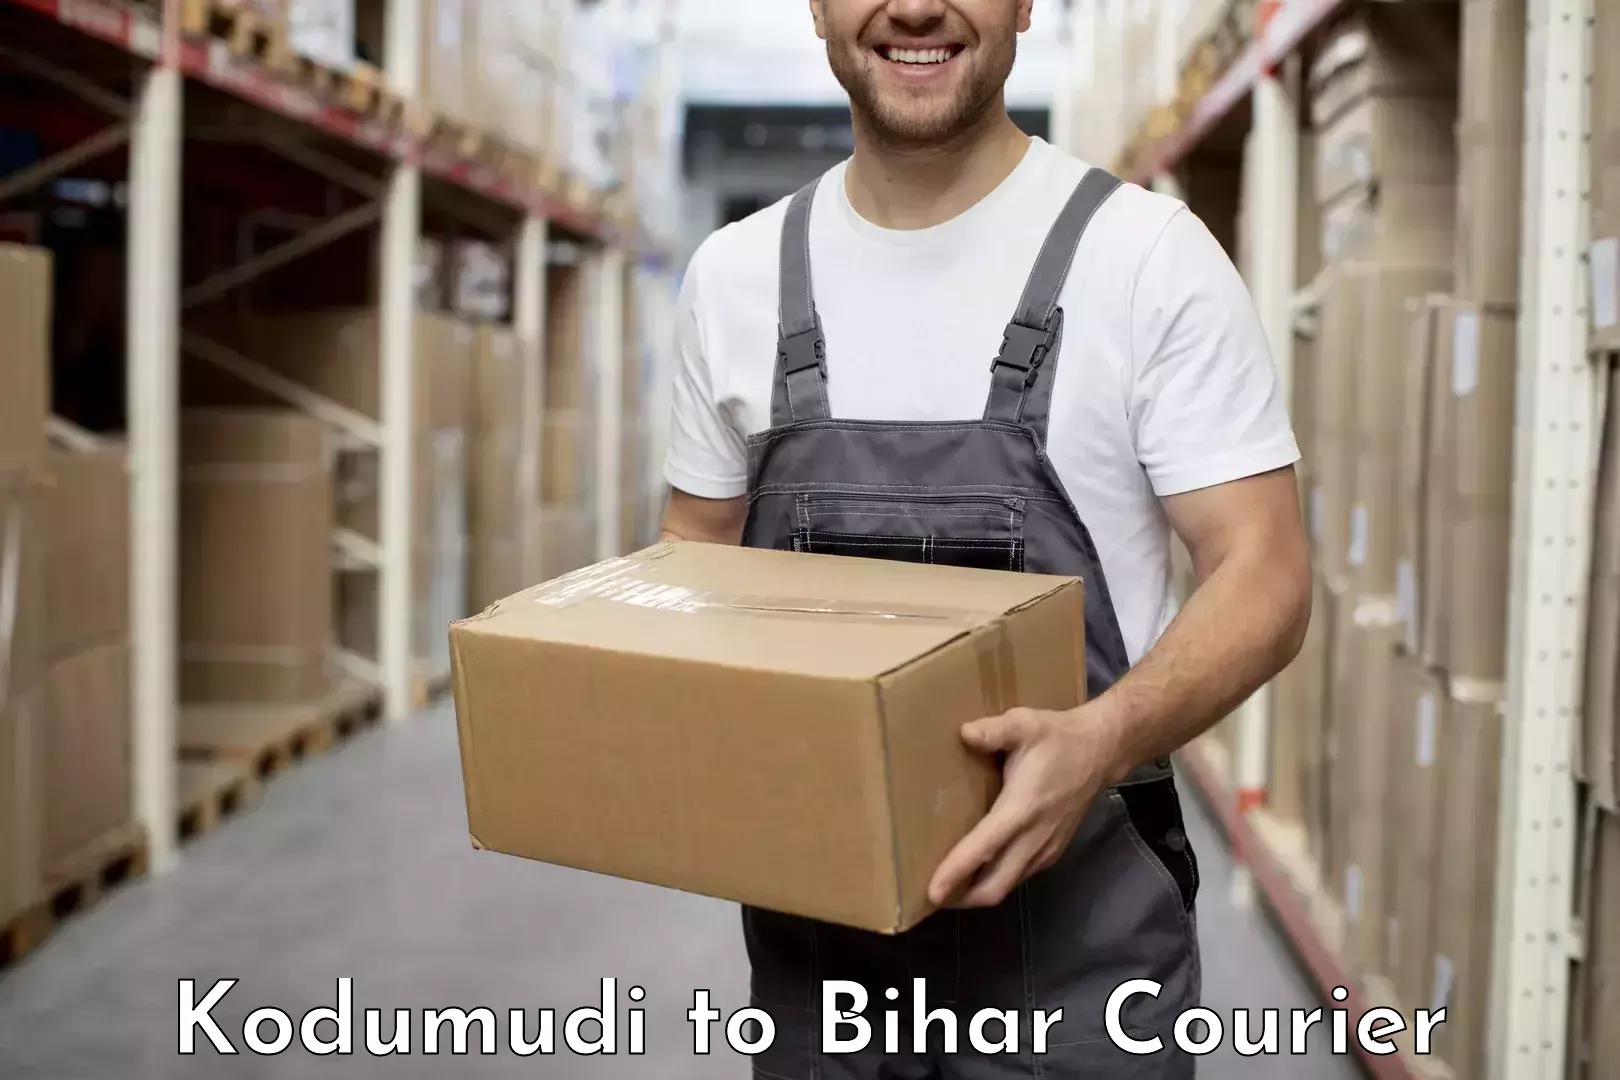 Courier service partnerships Kodumudi to Alamnagar